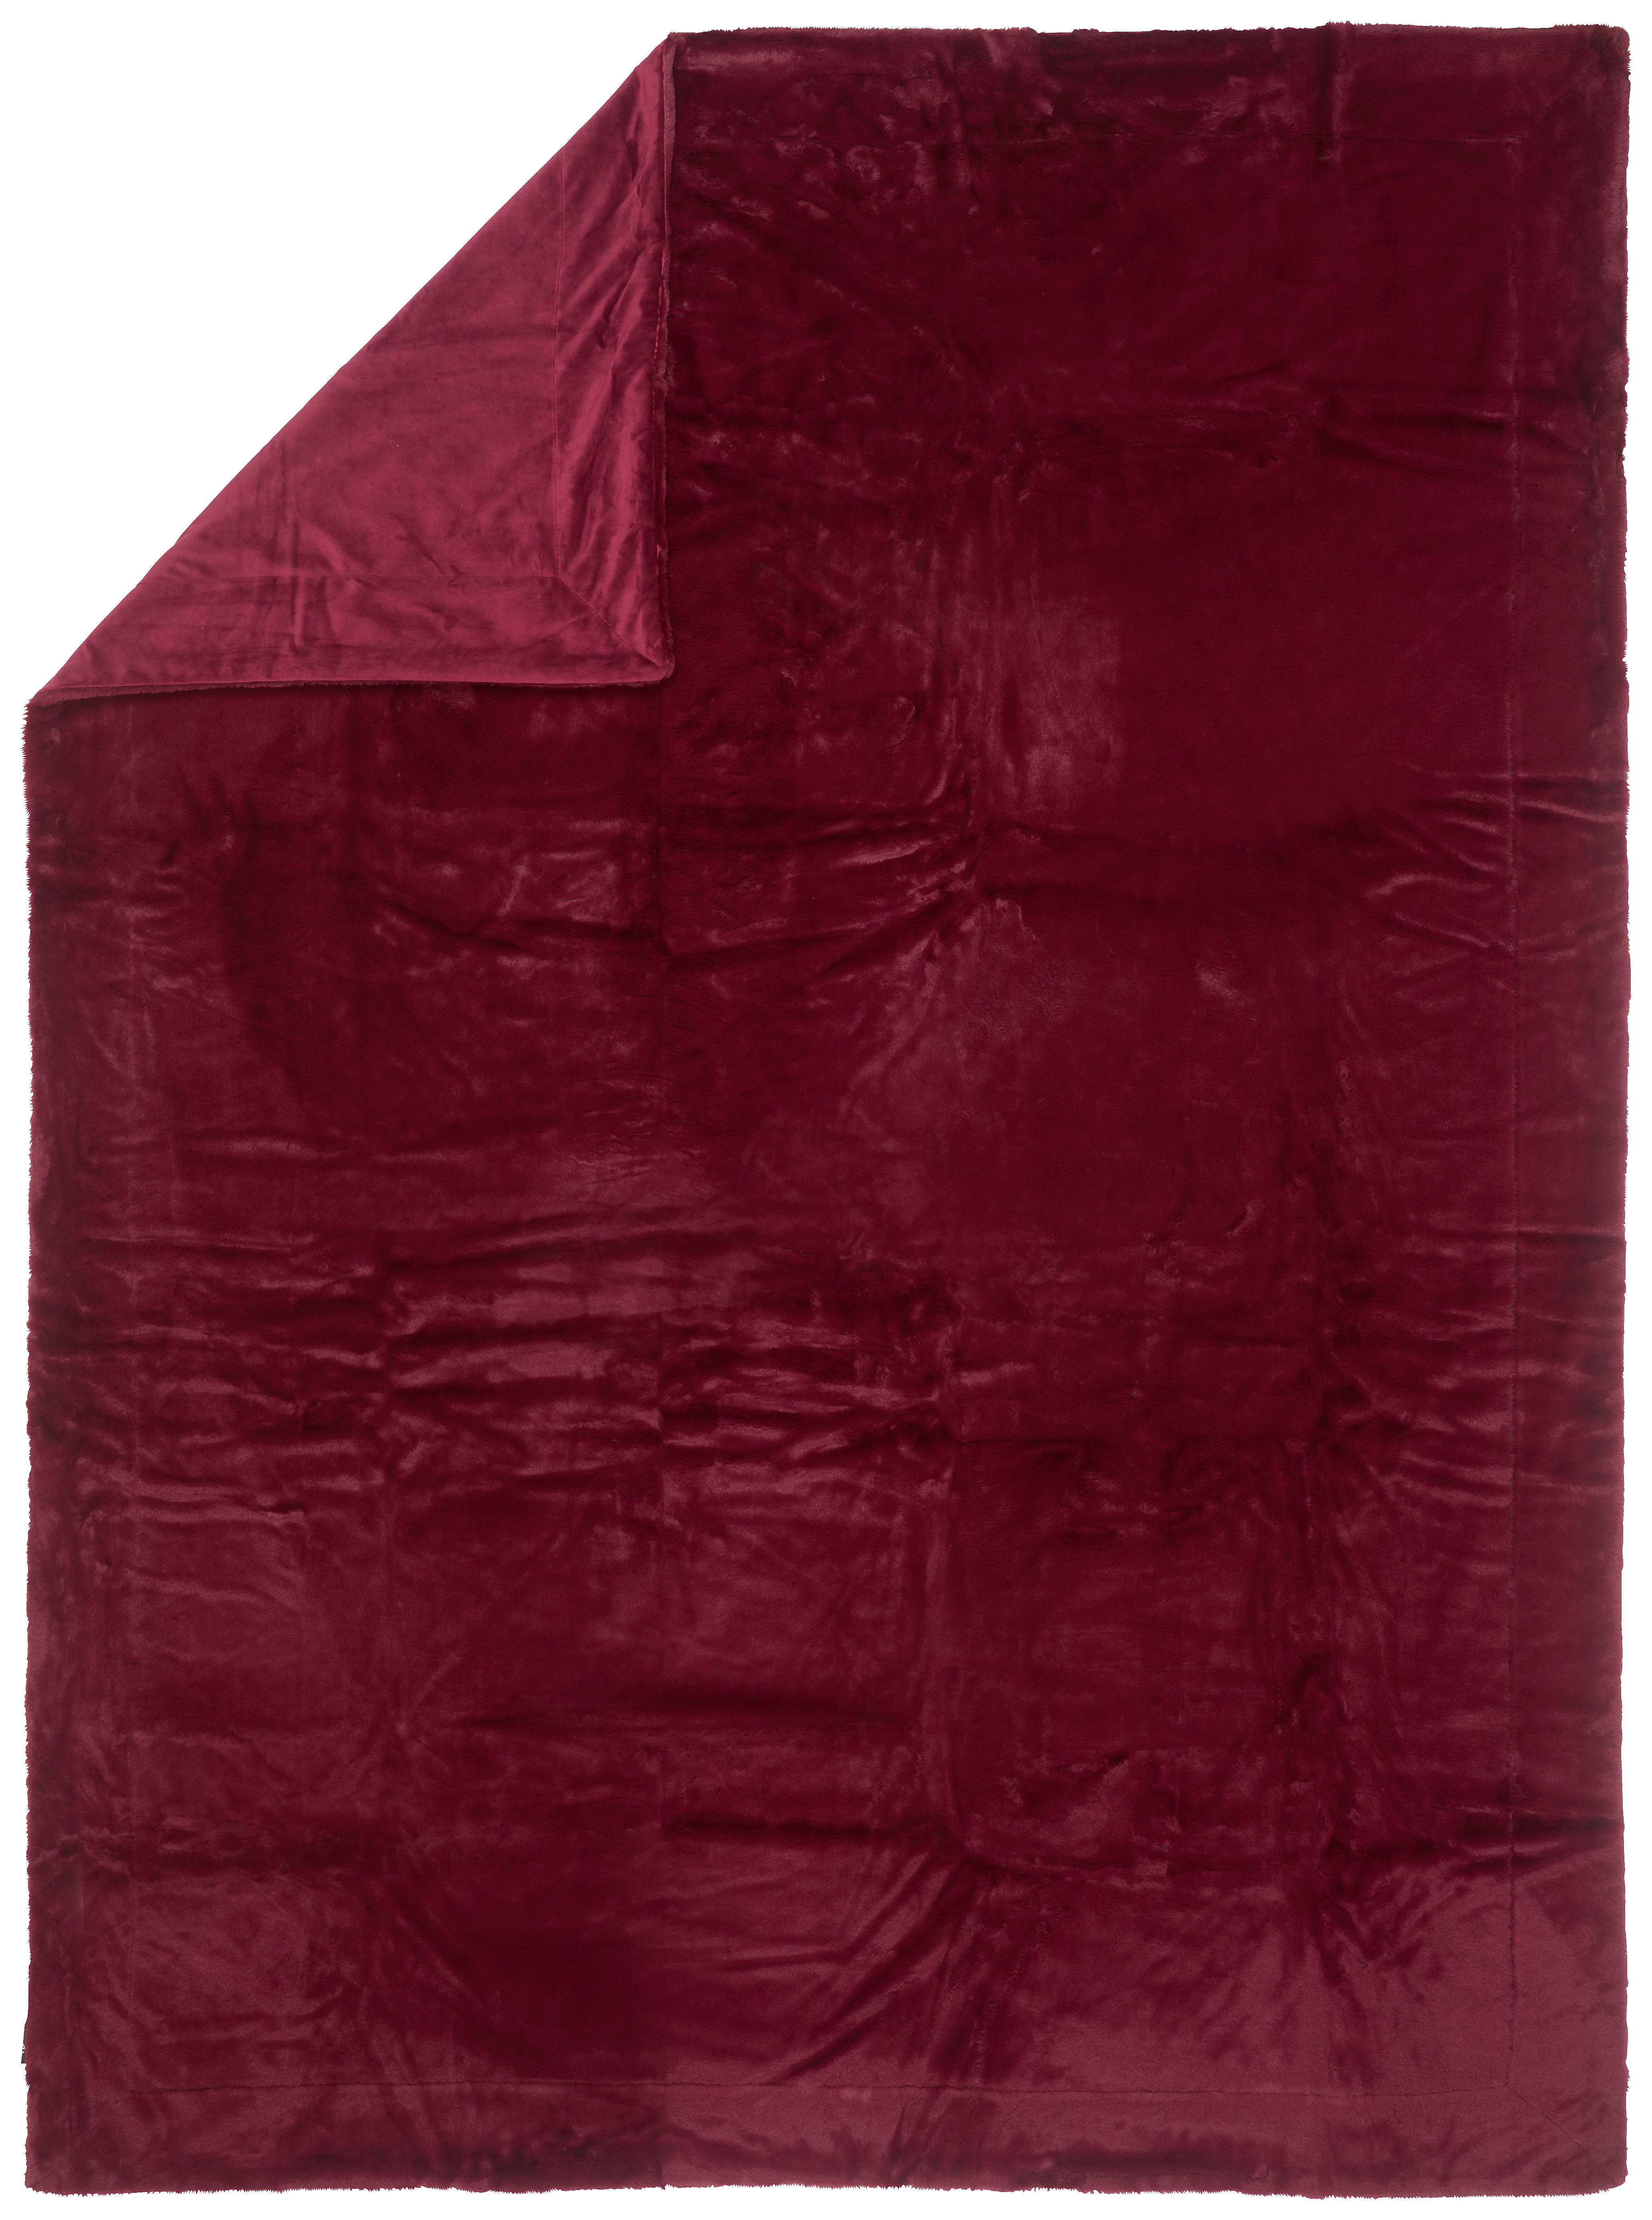 FELLDECKE Yukon 150/200 cm  - Beere, Design, Textil (150/200cm) - Novel